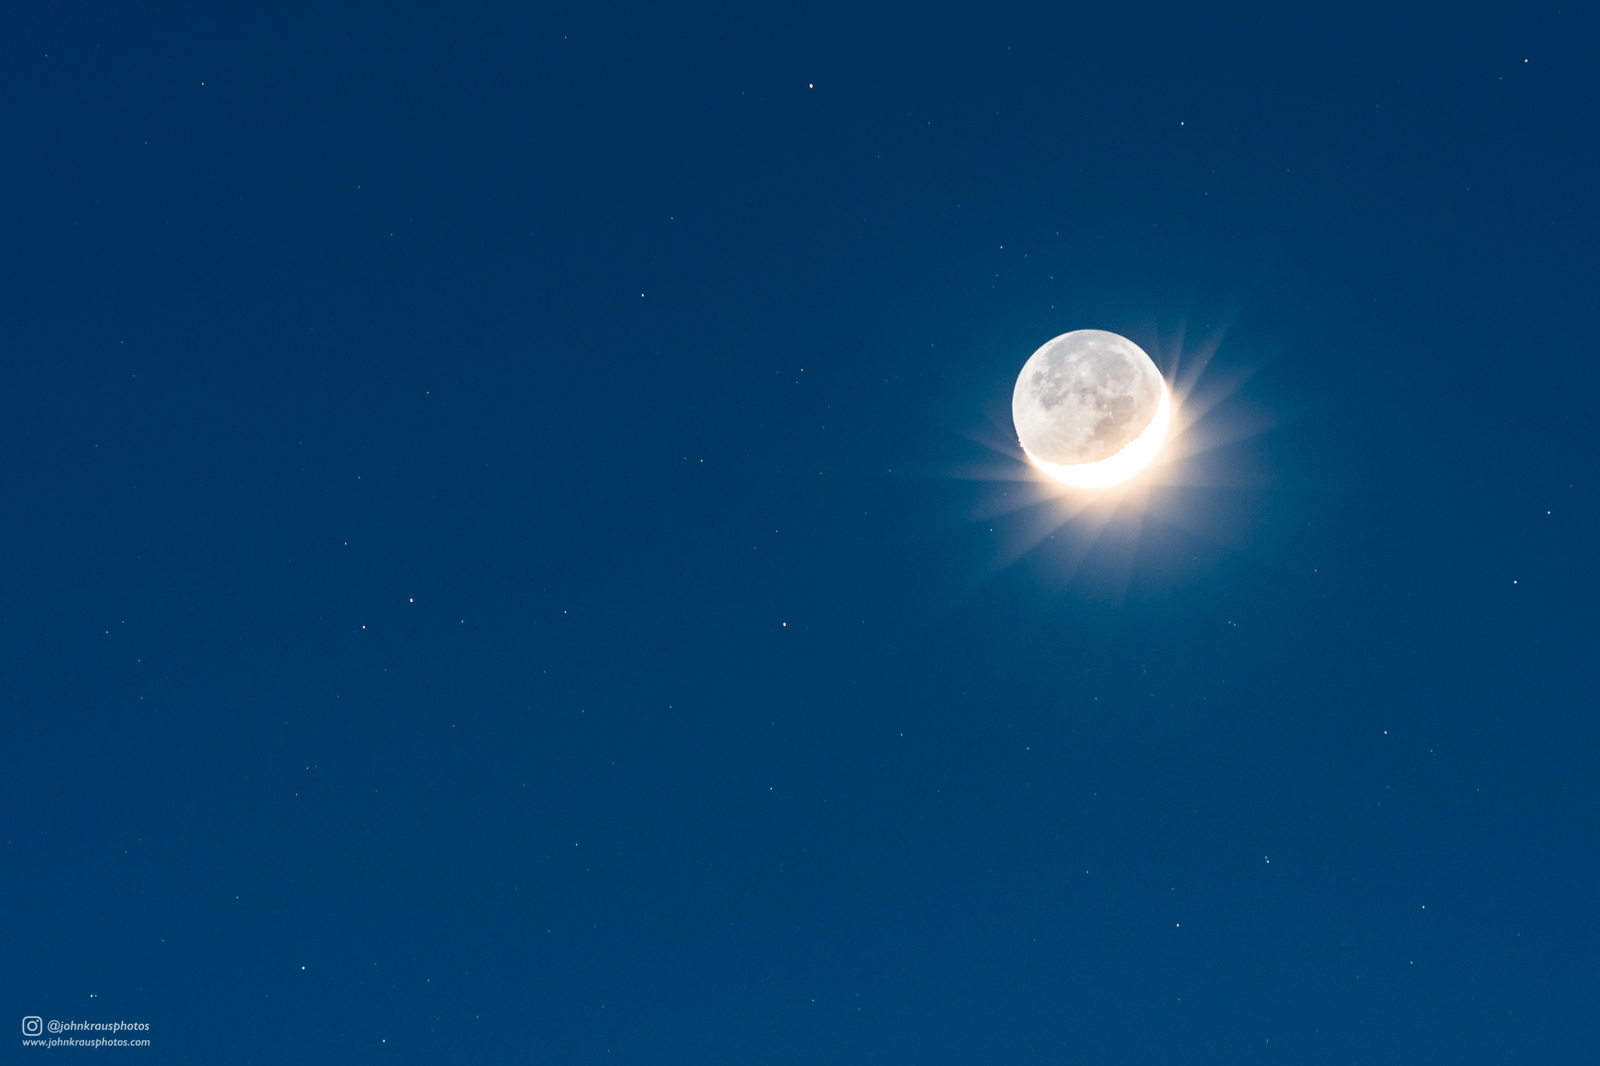 15 second half moon exposure - moon, Crescent, Space, Sky